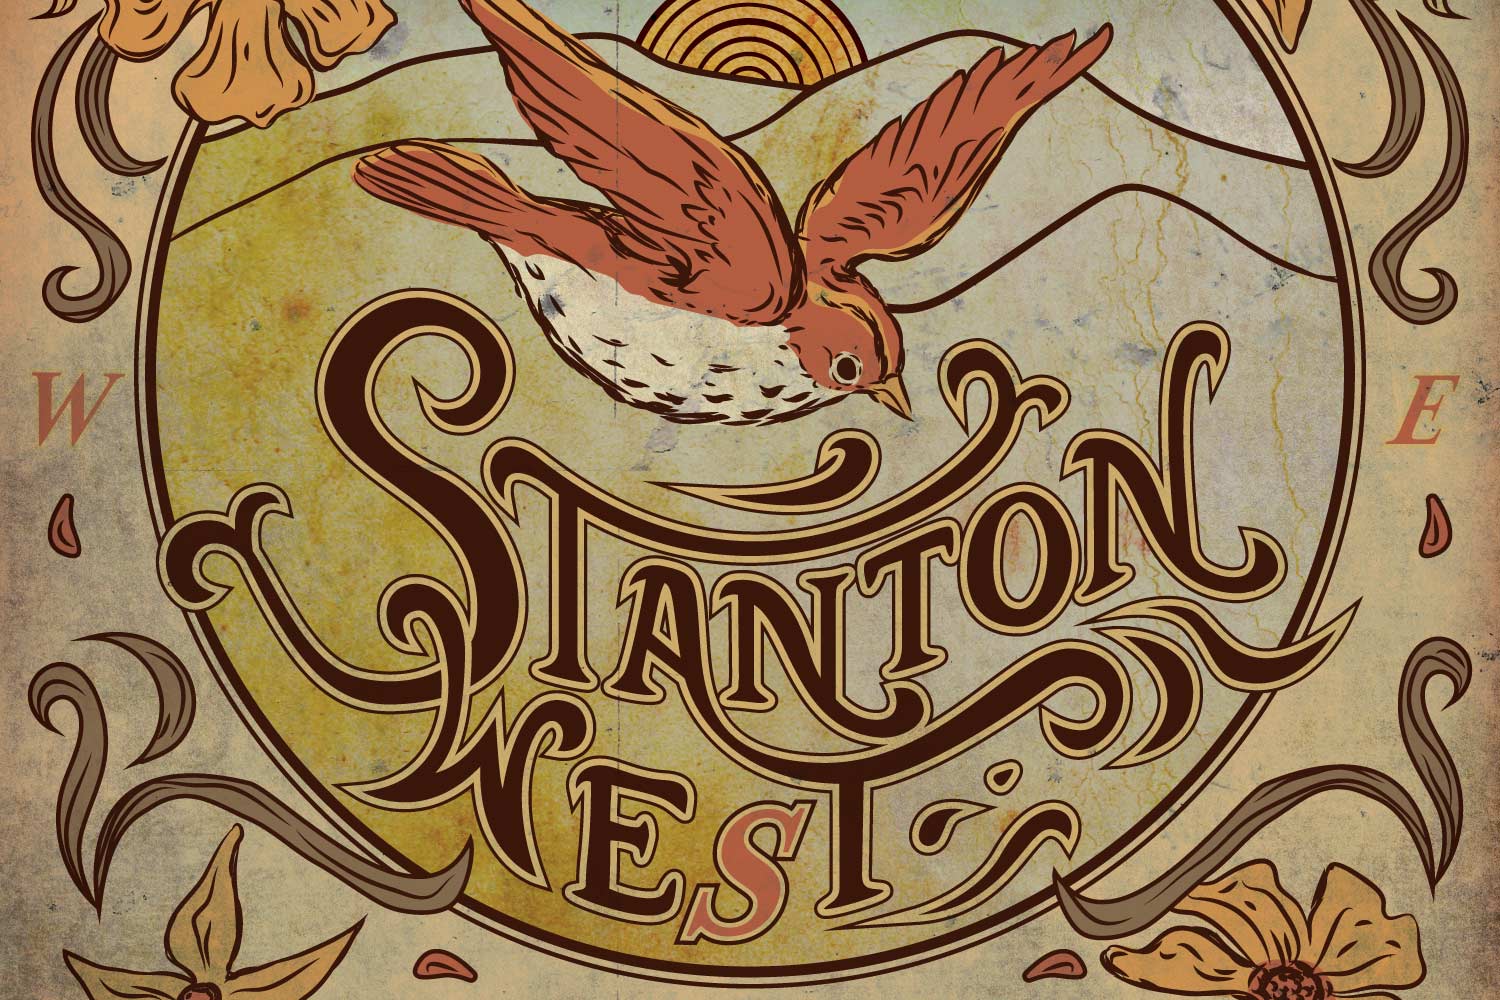 Stanton West Album design